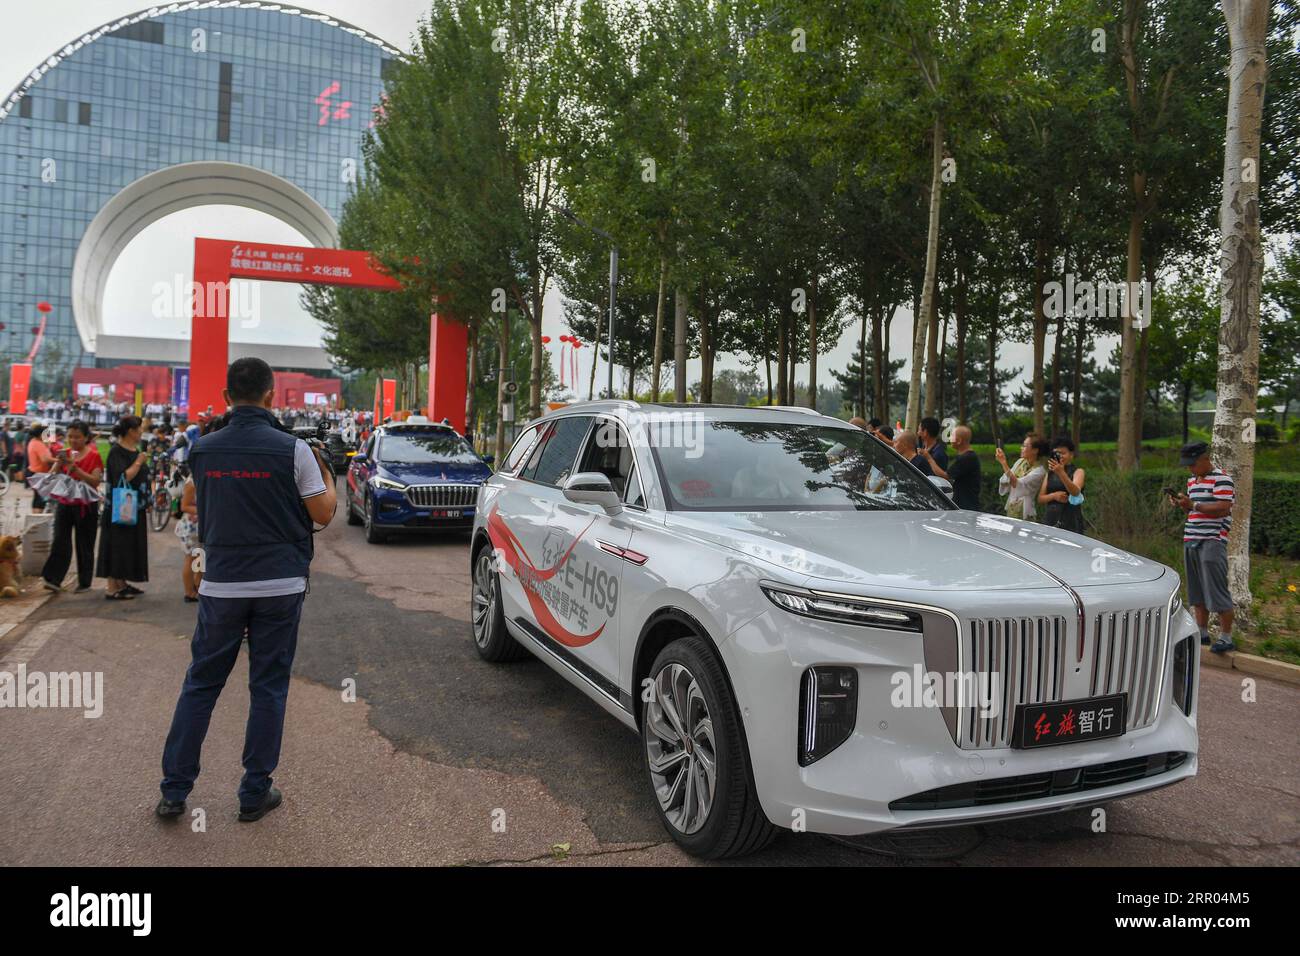 200728 -- CHANGCHUN, 28 luglio 2020 -- Una flotta di veicoli inizia un tour urbano durante un evento che presenta i prodotti e la cultura dell'iconico marchio automobilistico cinese Hongqi a Changchun, nella provincia di Jilin, nella Cina nordorientale, il 28 luglio 2020. CHINA-CHANGCHUN-AUTO-HONGQI CN ZhangxNan PUBLICATIONxNOTxINxCHN Foto Stock